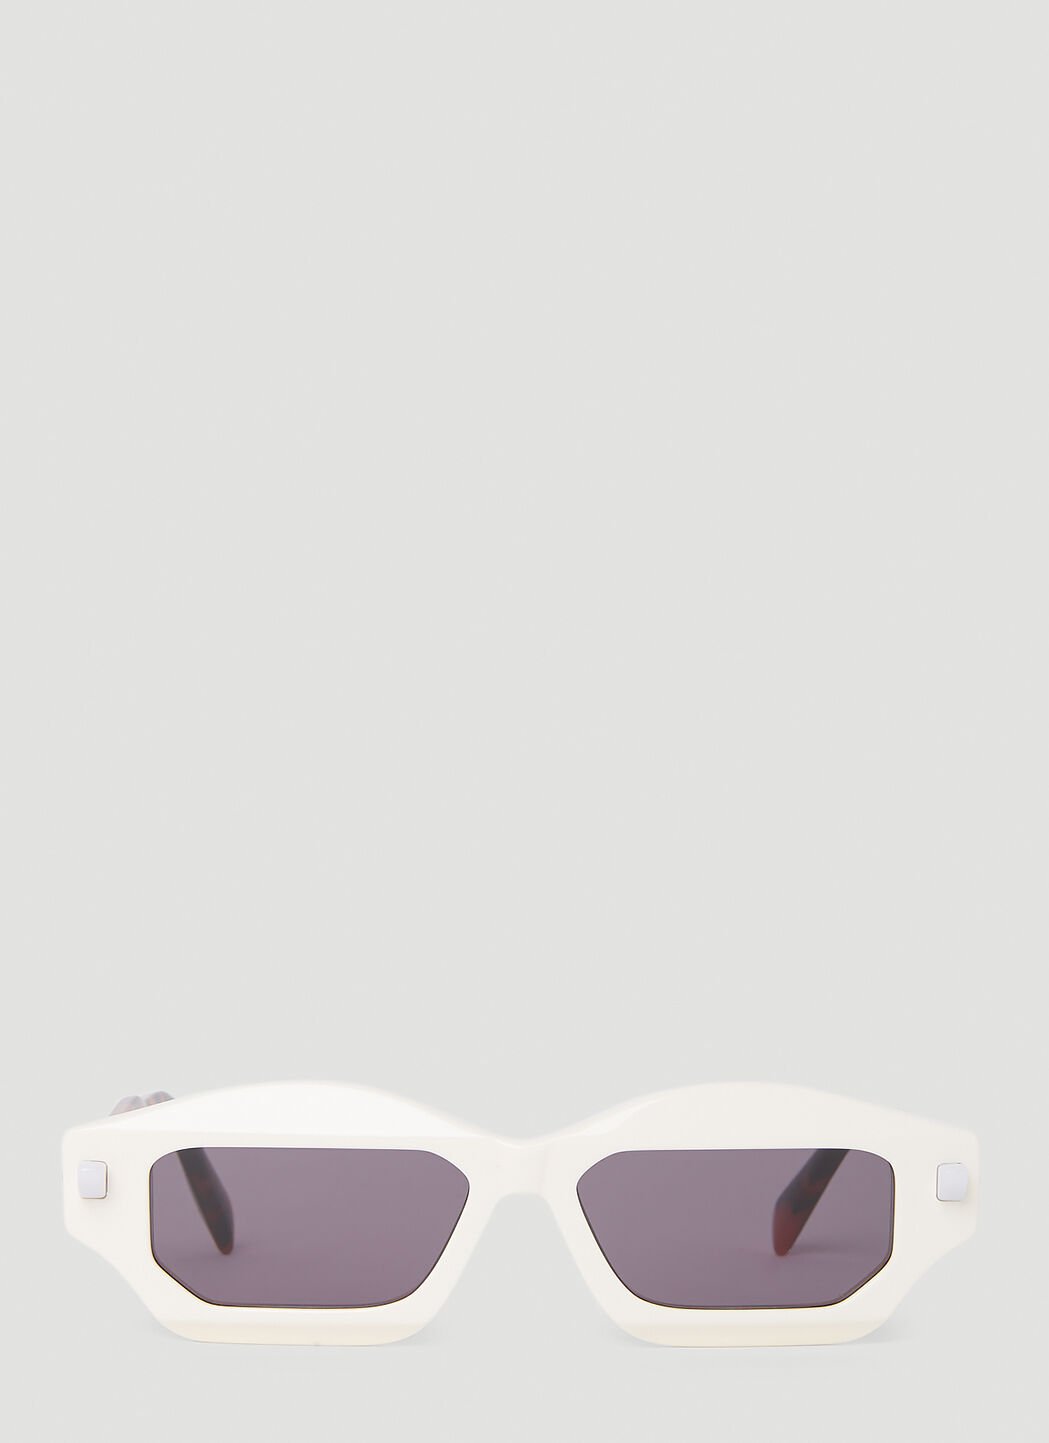 Balenciaga Q6 Sunglasses 블랙 bcs0153001